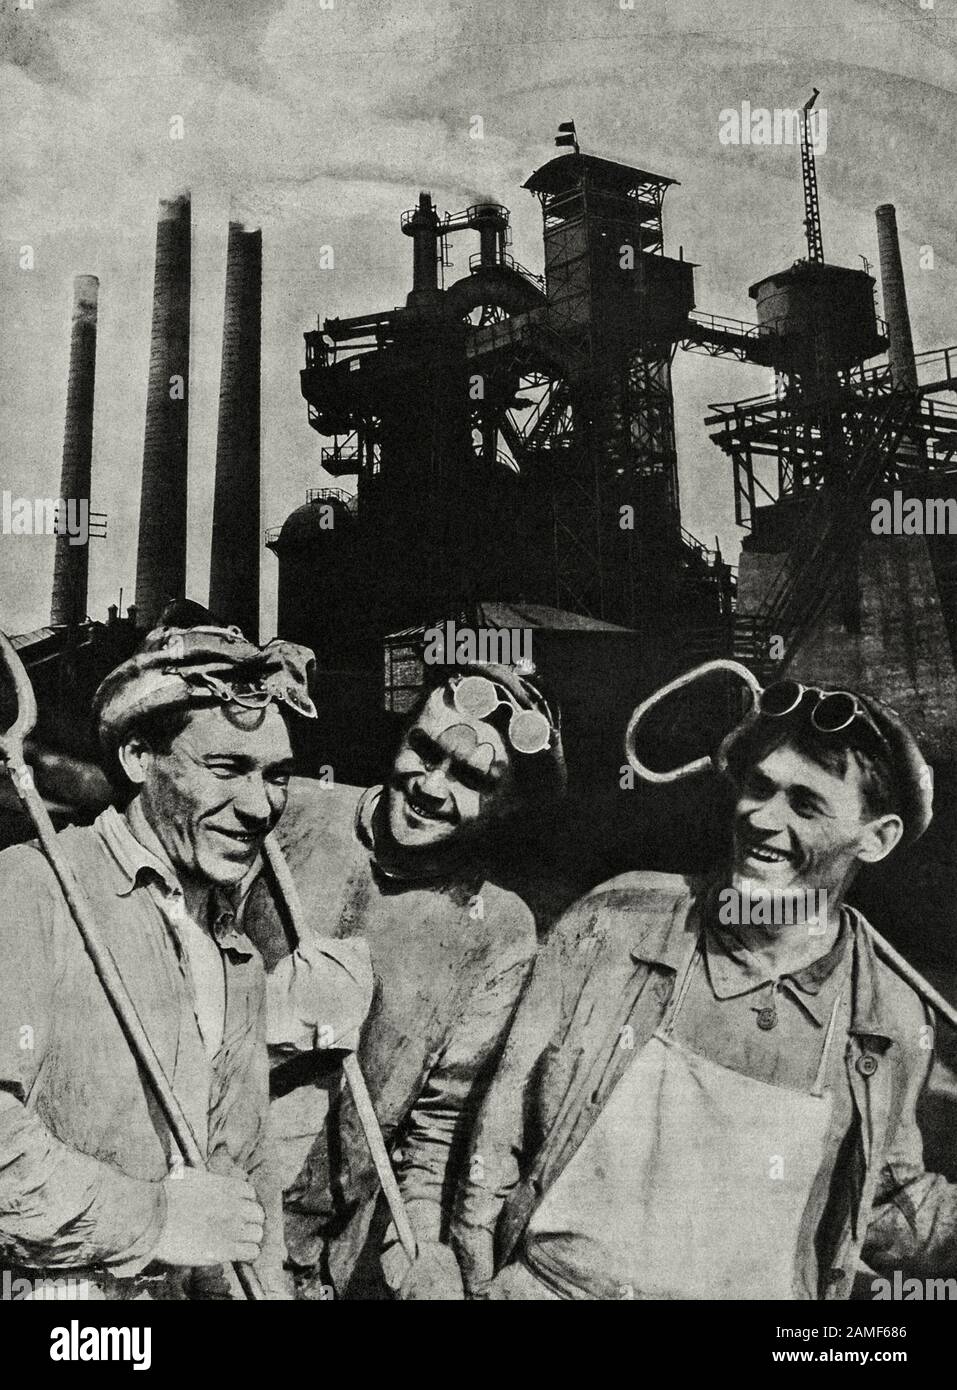 La vie en Union soviétique dans les années 1930. Du livre de propagande soviétique. Des travailleurs steelworkers soviétiques heureux Banque D'Images